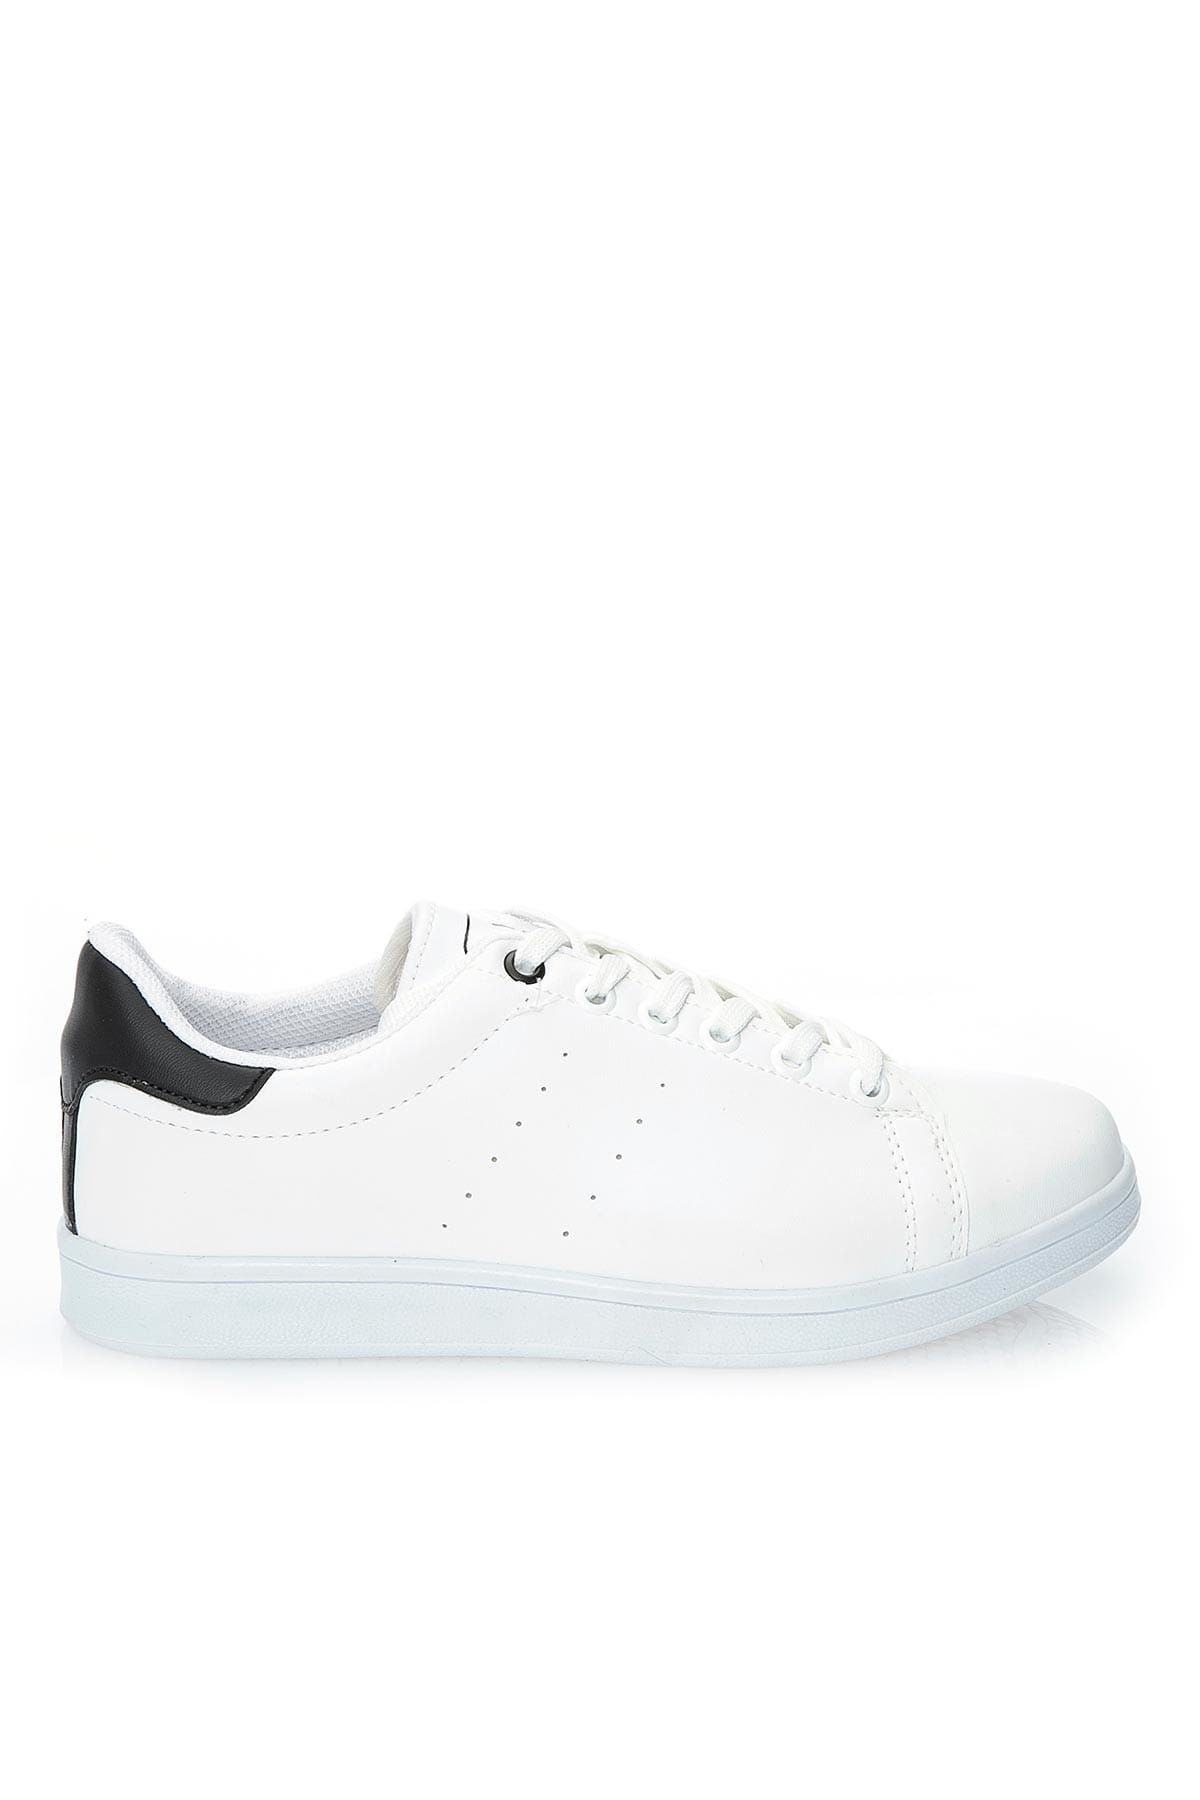 Ayakkabı Modası Beyaz Siyah Kadın Spor Ayakkabı 669-8-8600-4